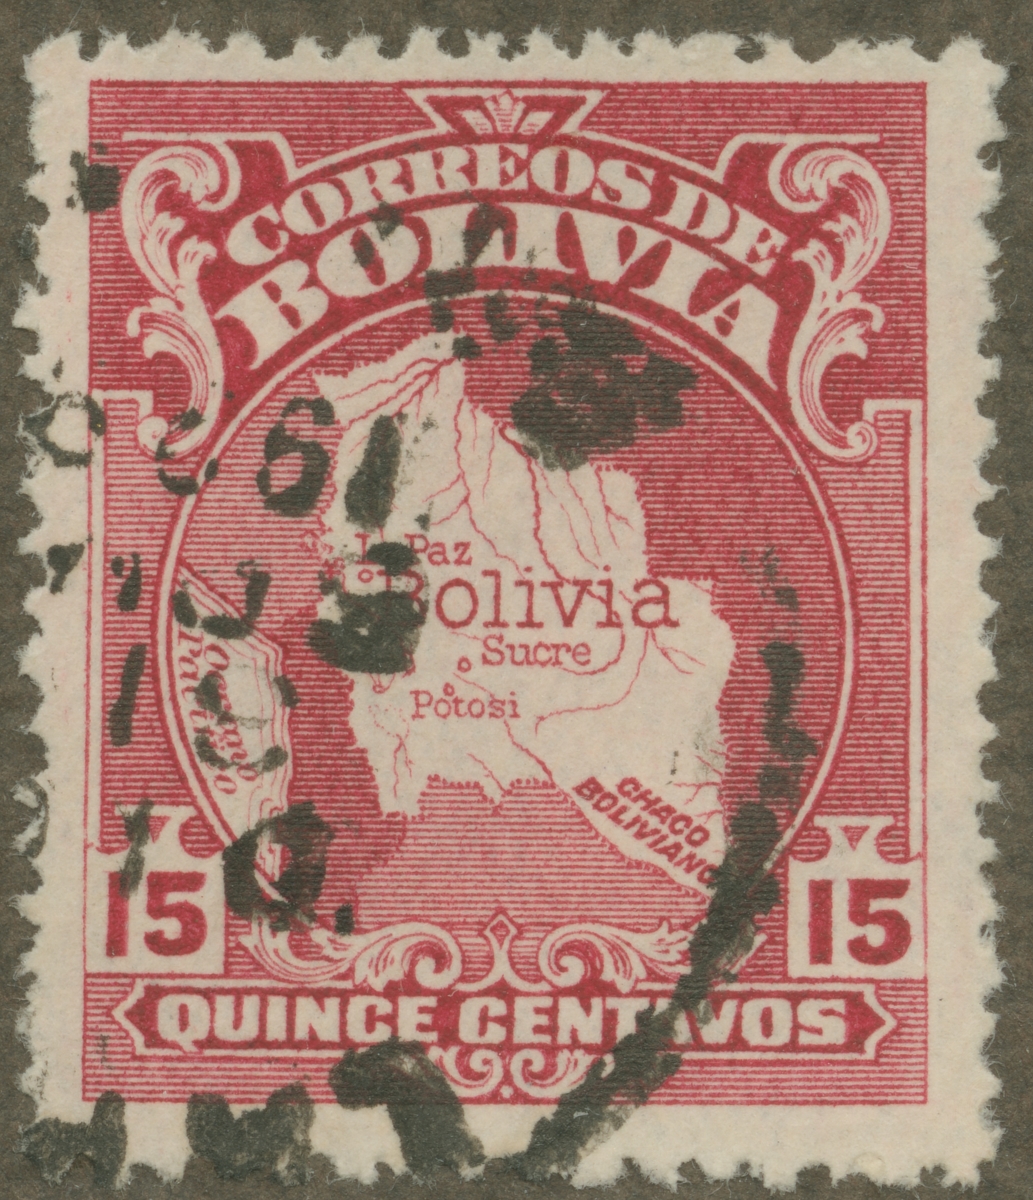 Frimärke ur Gösta Bodmans filatelistiska motivsamling, påbörjad 1950.
Frimärke från Bolivia, 1928. Motiv av karta över Bolivia.